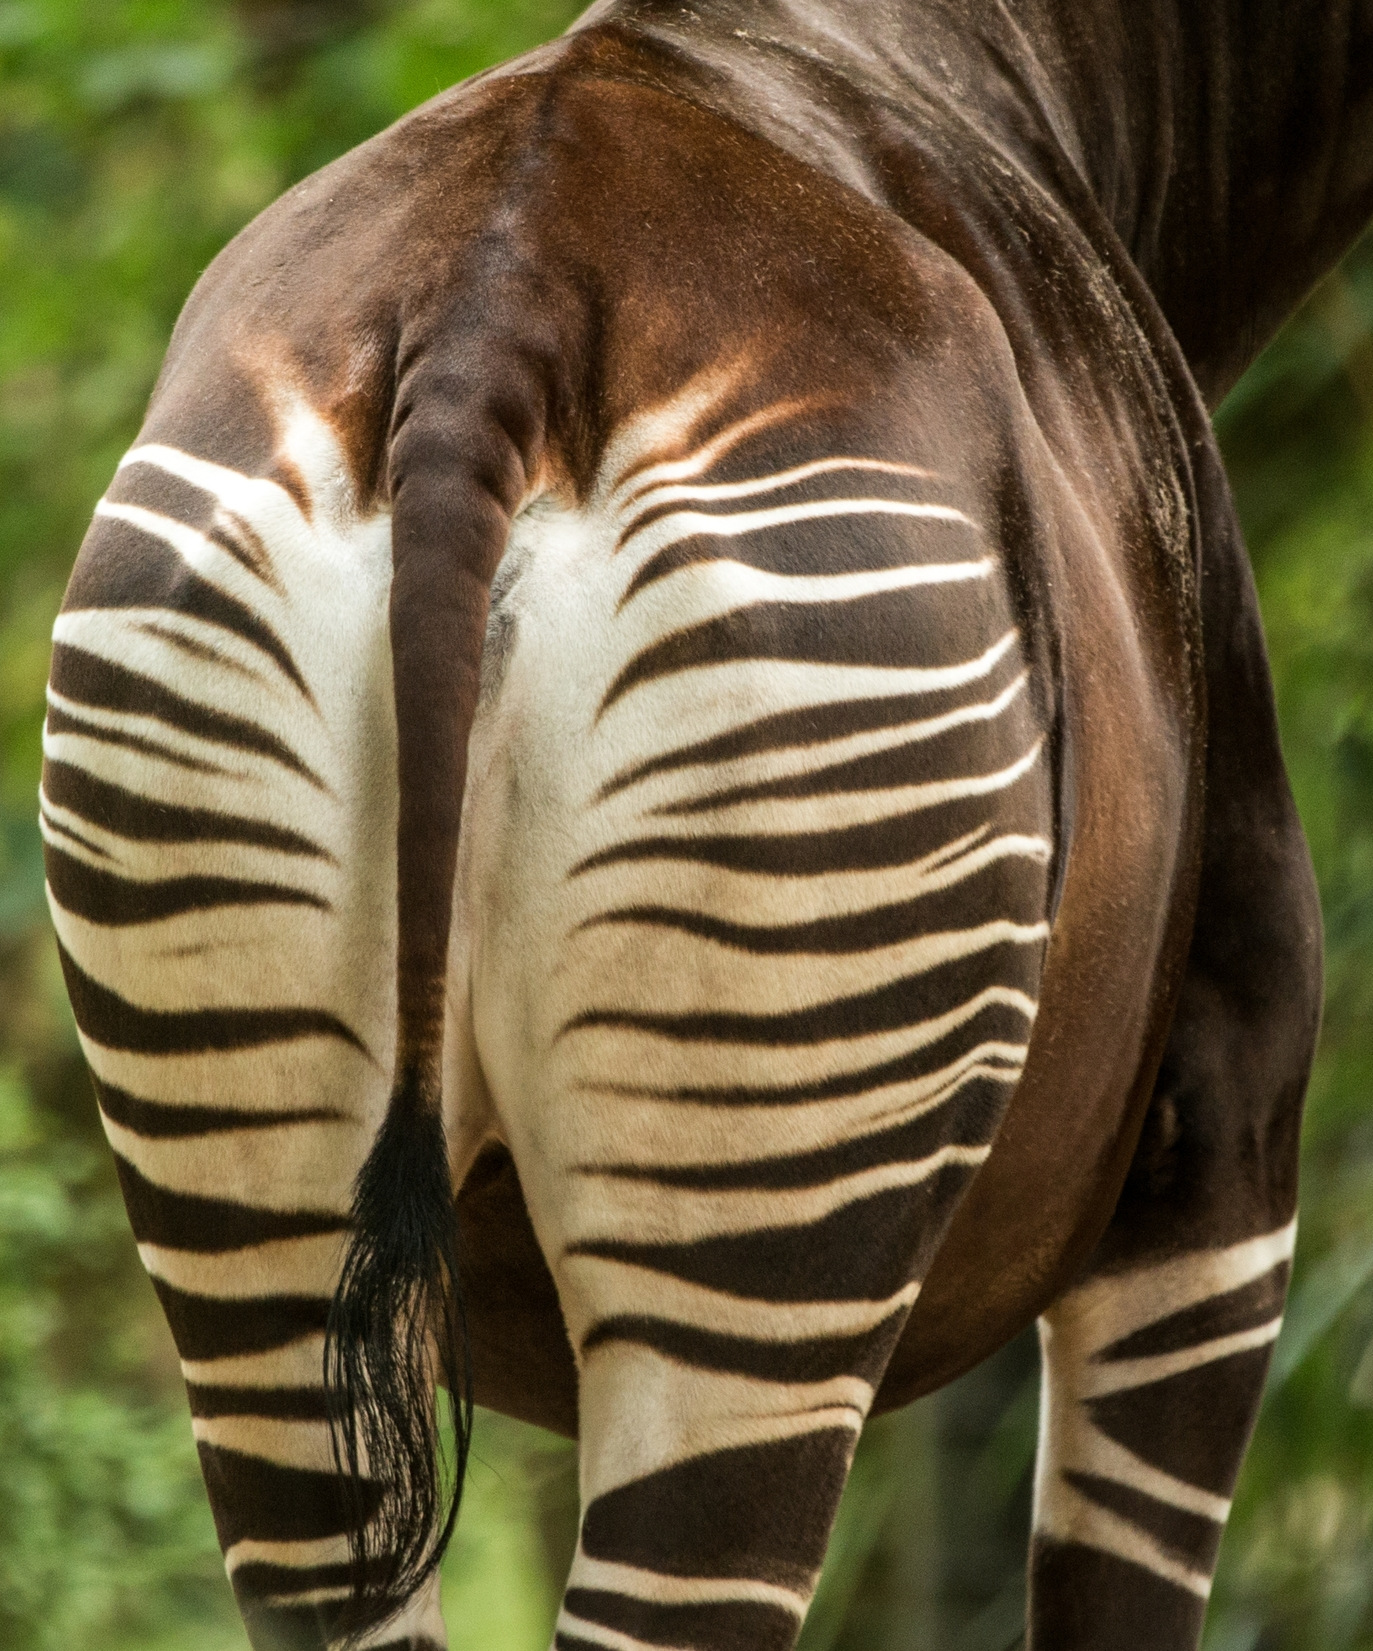 Le derrière d'un okapi